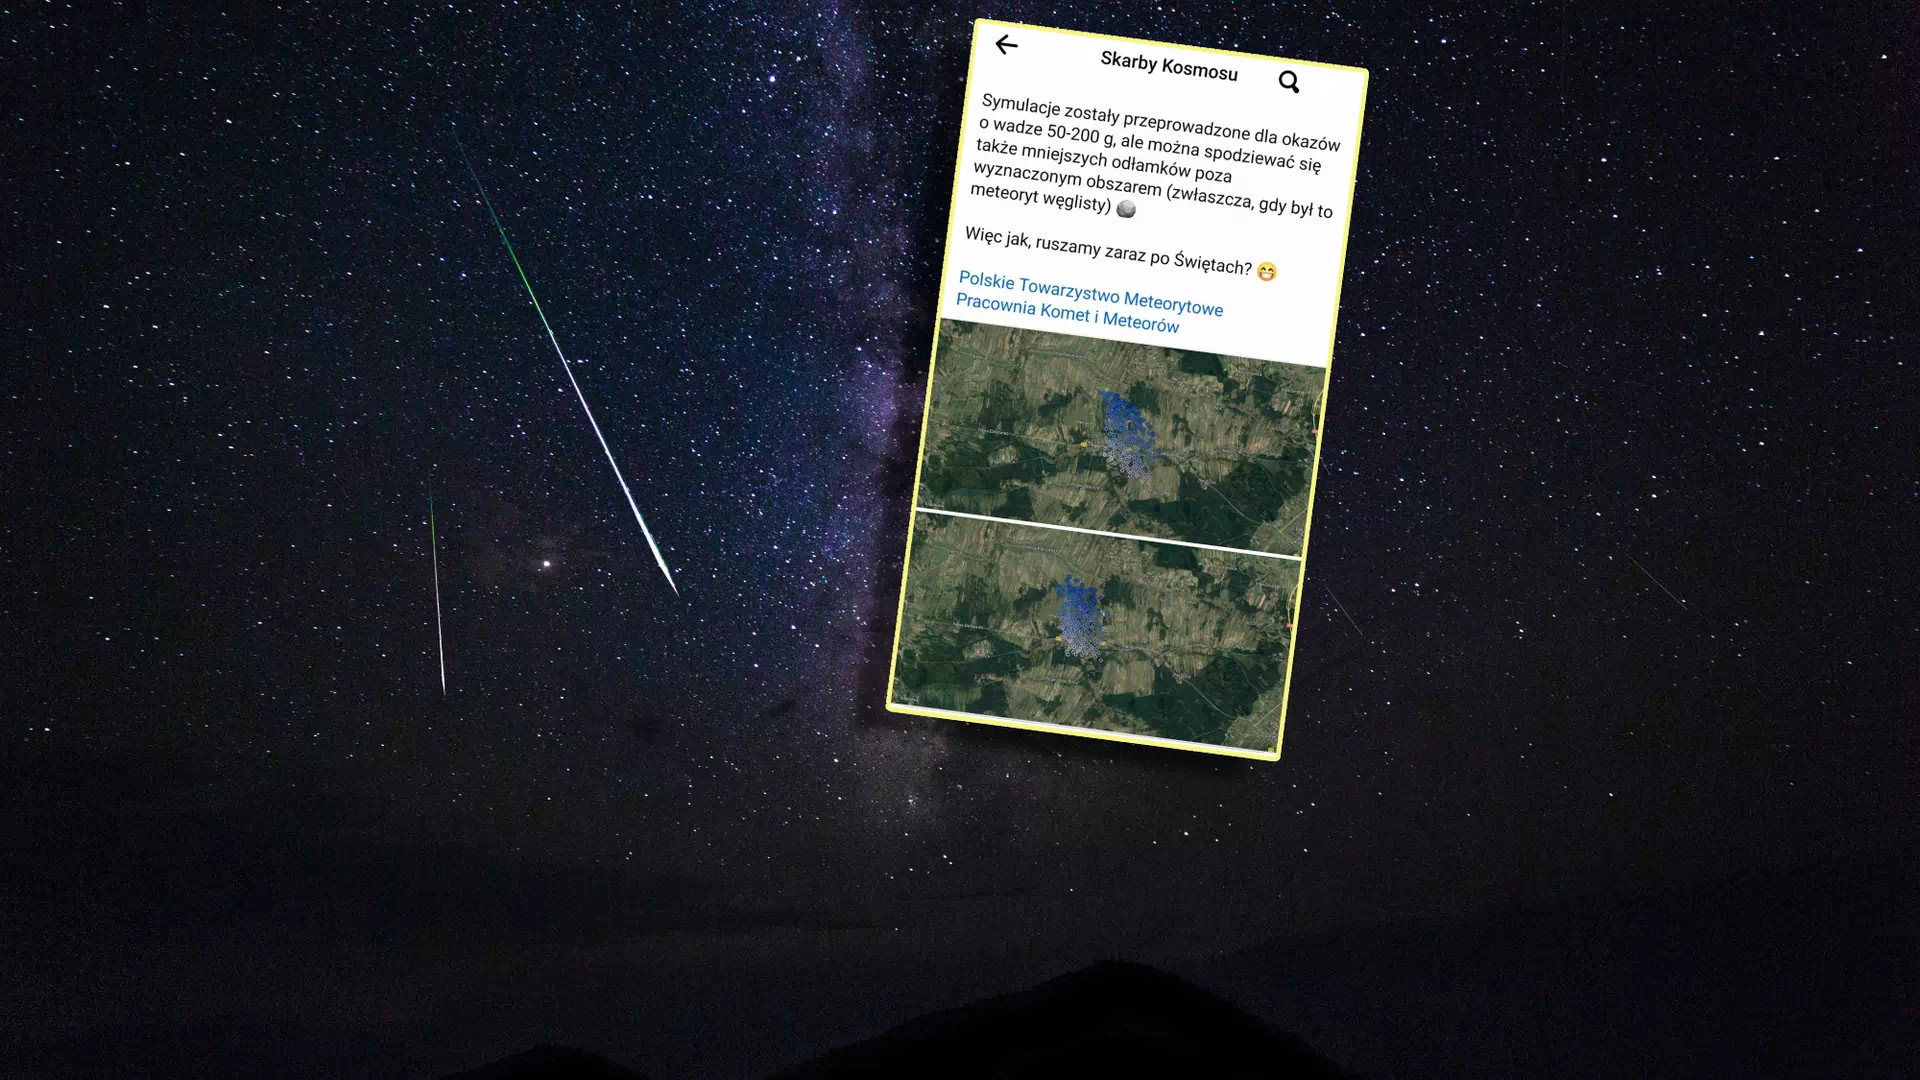 W Polsce mógł spaść meteoryt. Zrobili dokładną mapę, gdzie go szukać